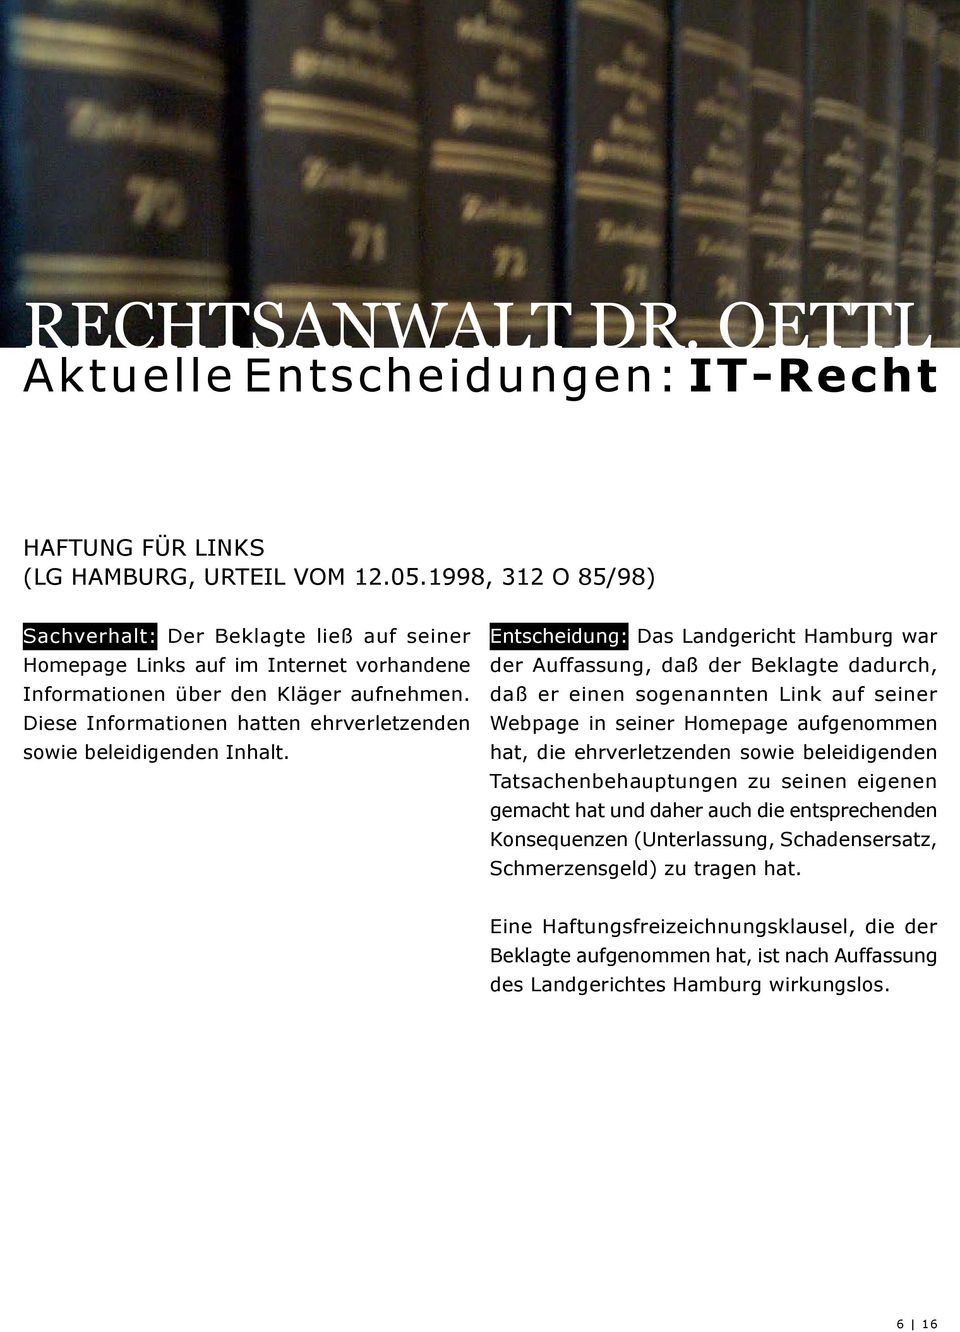 Entscheidung: Das Landgericht Hamburg war der Auffassung, daß der Beklagte dadurch, daß er einen sogenannten Link auf seiner Webpage in seiner Homepage aufgenommen hat, die ehrverletzenden